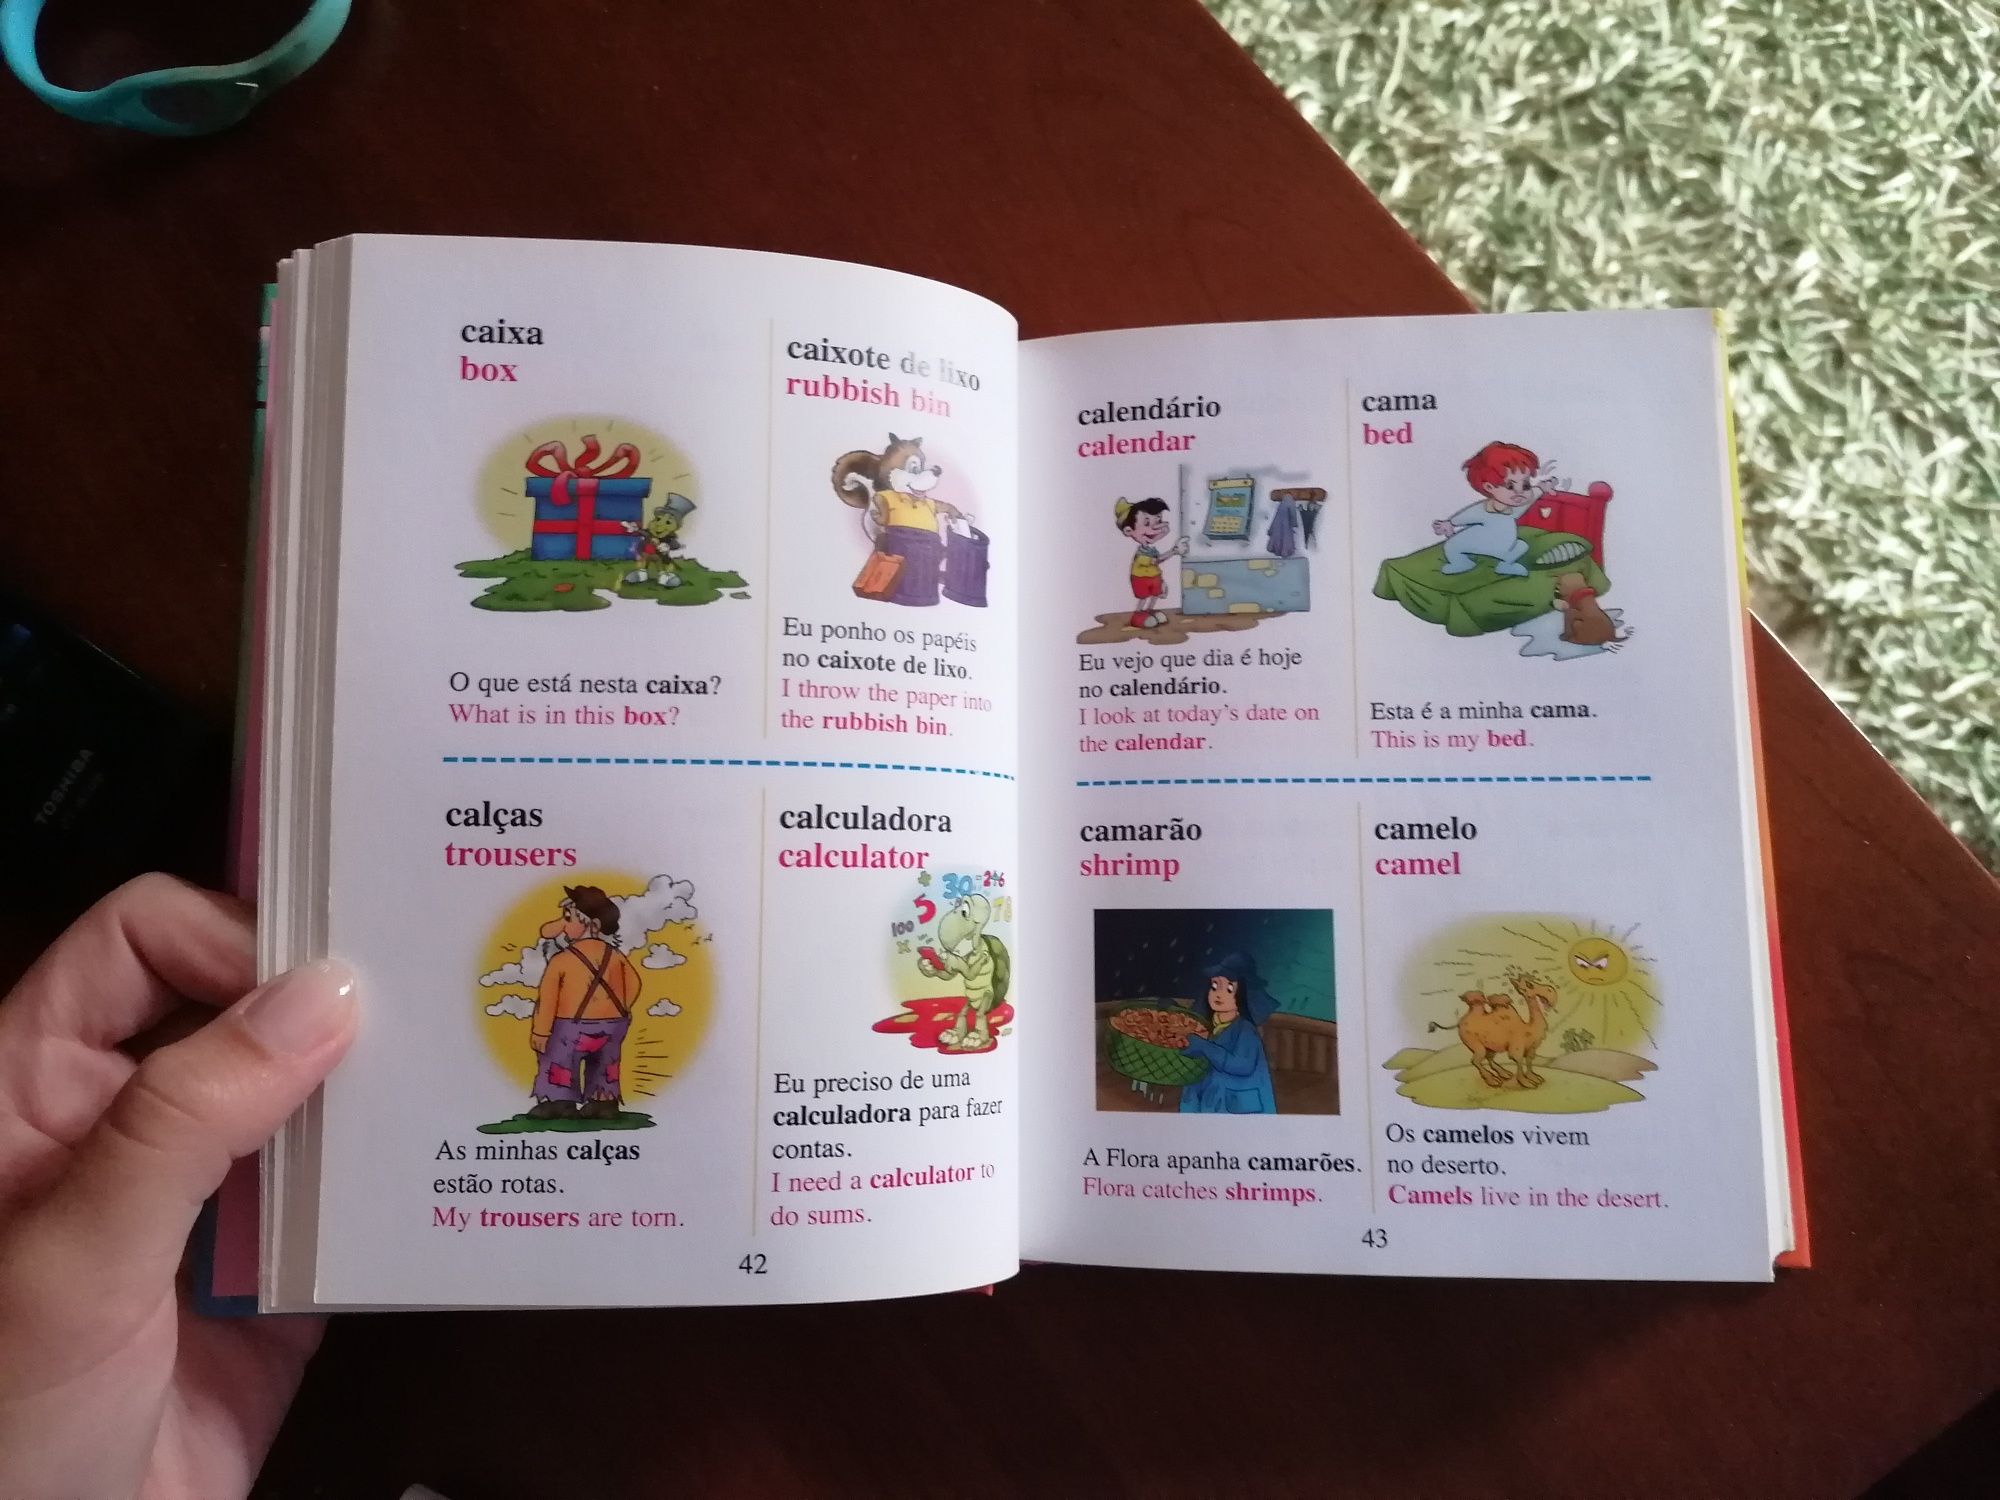 Dicionário Português-Inglês com ilustrações